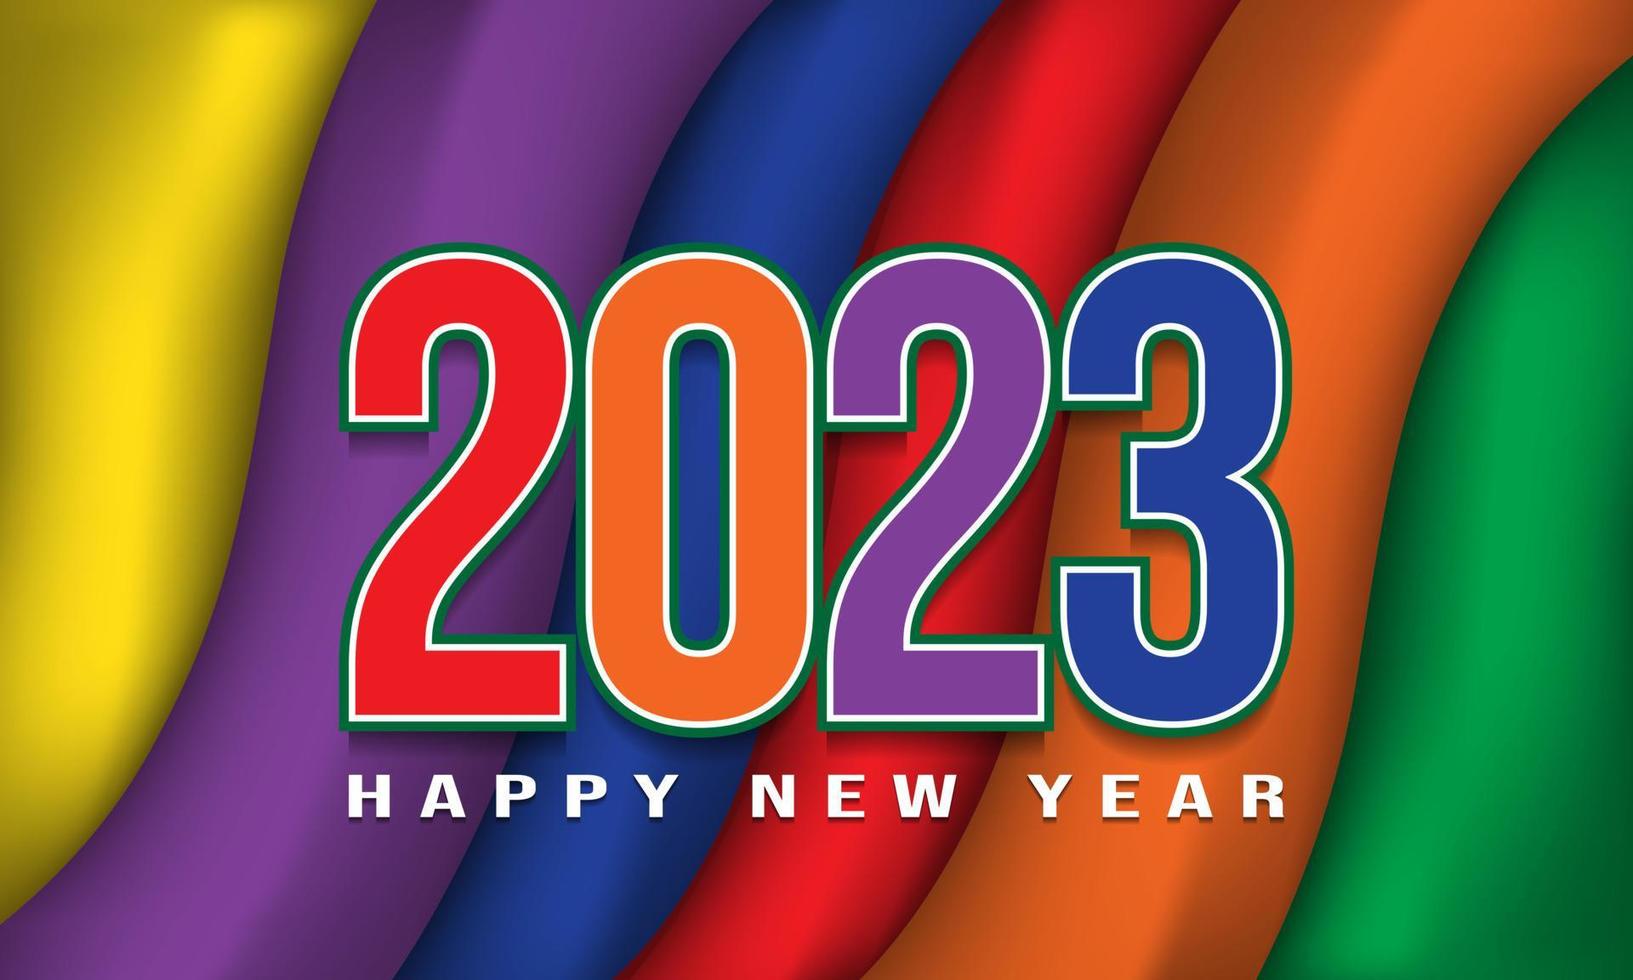 Diseño de fondo de feliz año nuevo 2023. vector